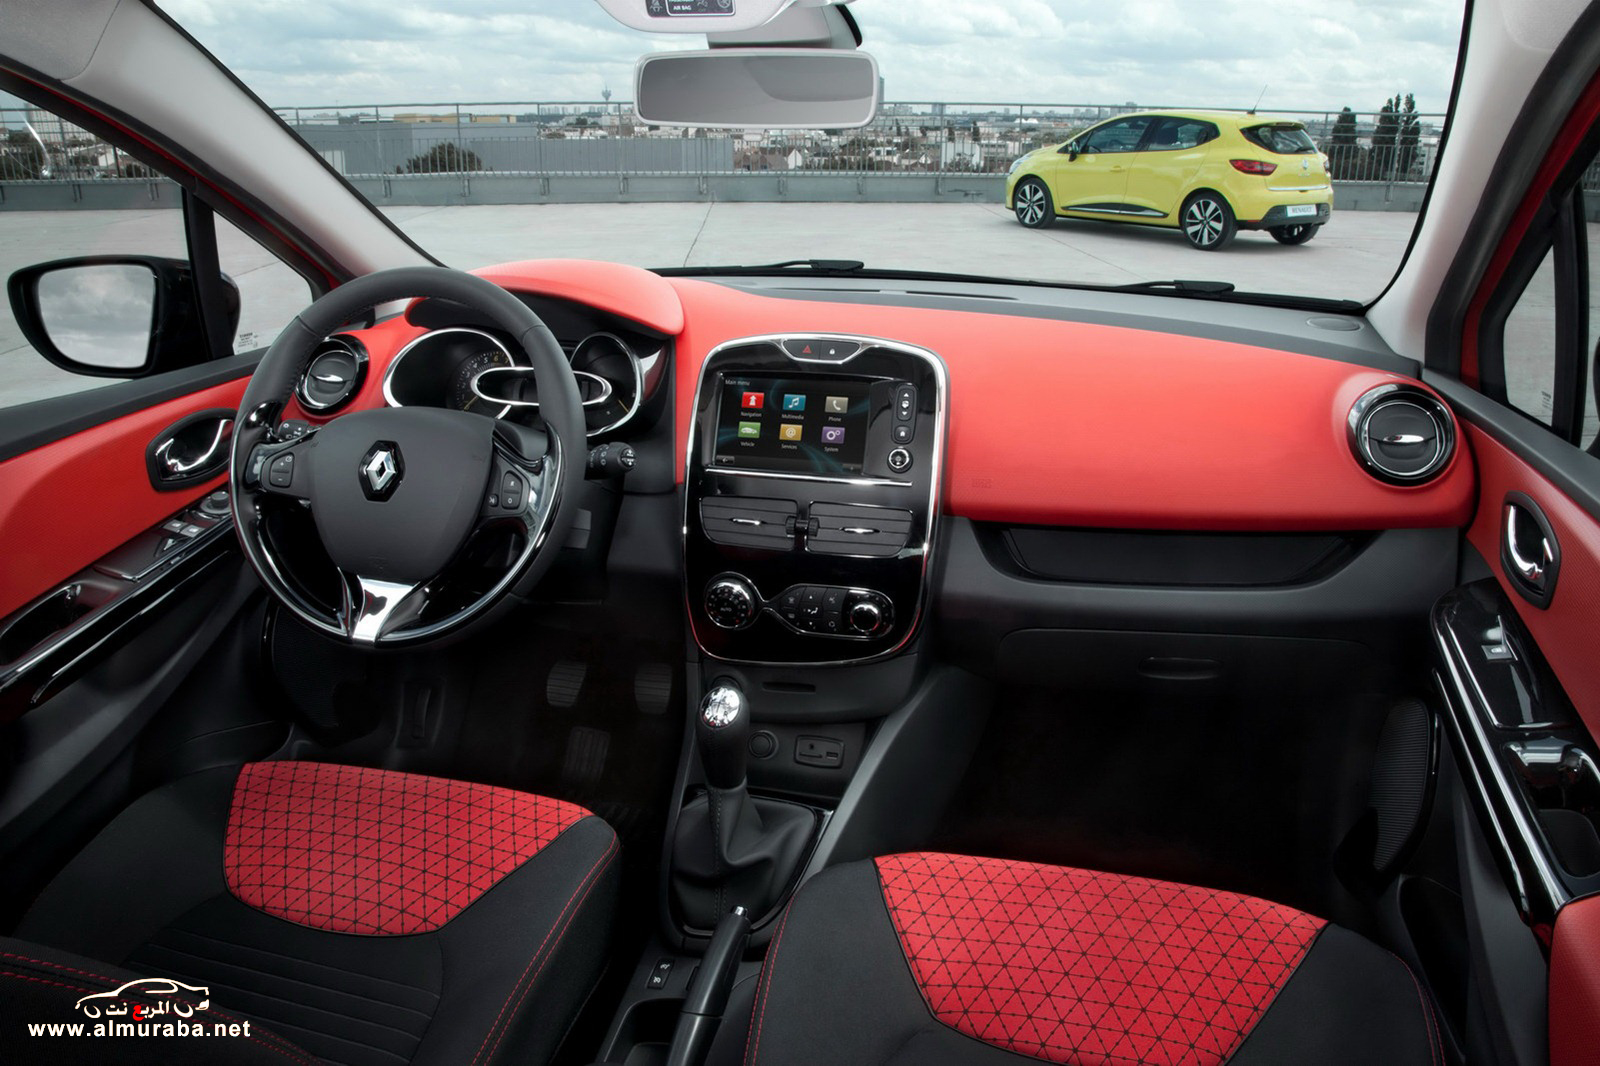 روينو كليو 4 السيارة الجديدة الاقتصادية والمخصصة للجميع بالصور Renault Clio 4